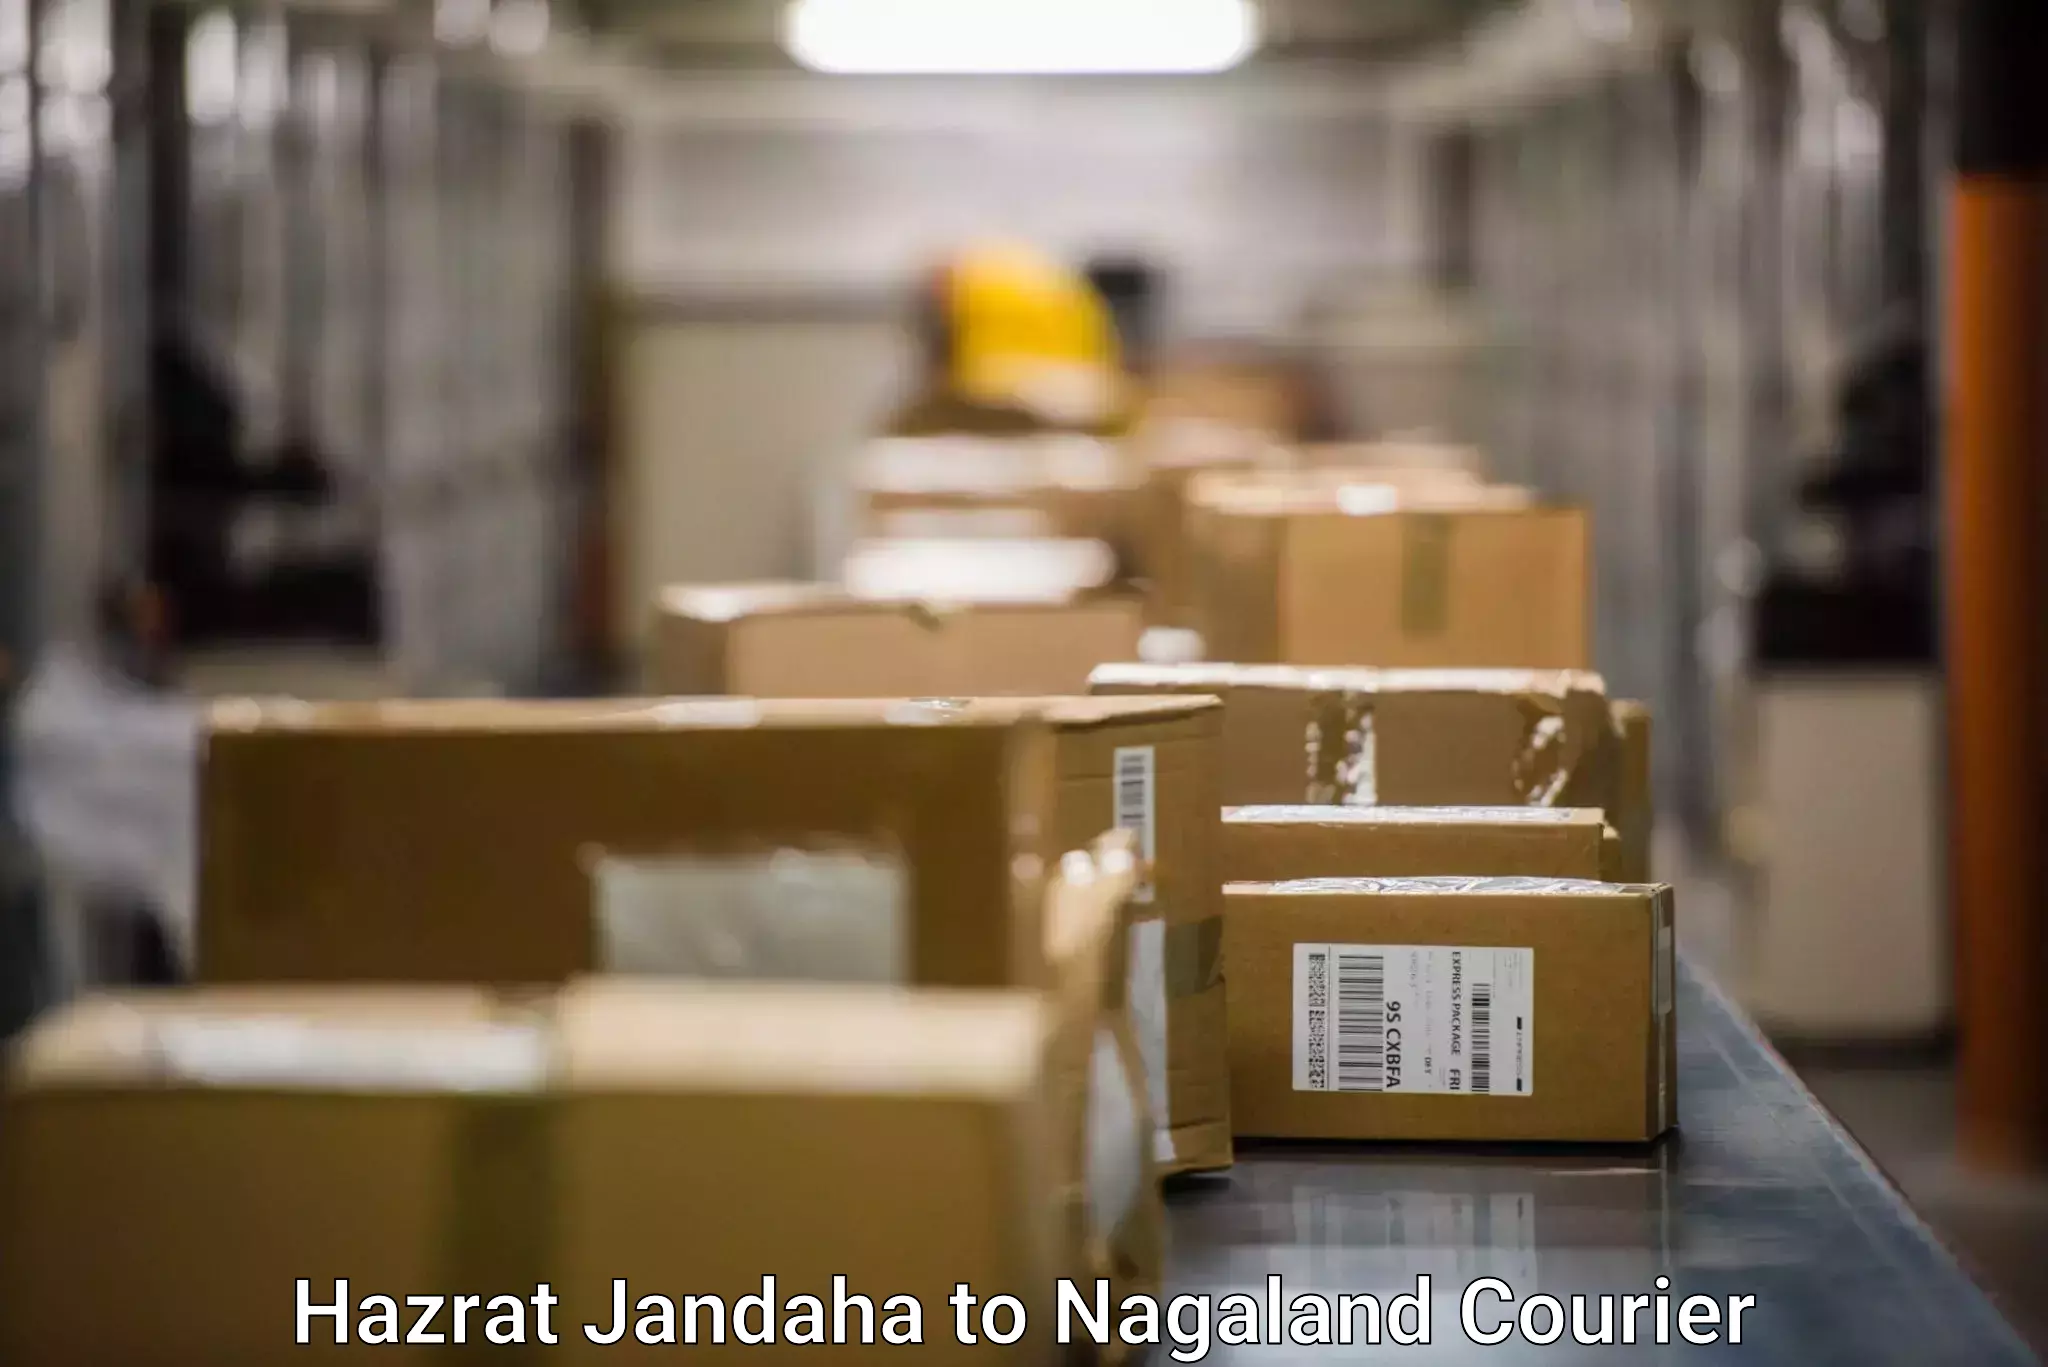 Cash on delivery service Hazrat Jandaha to Nagaland